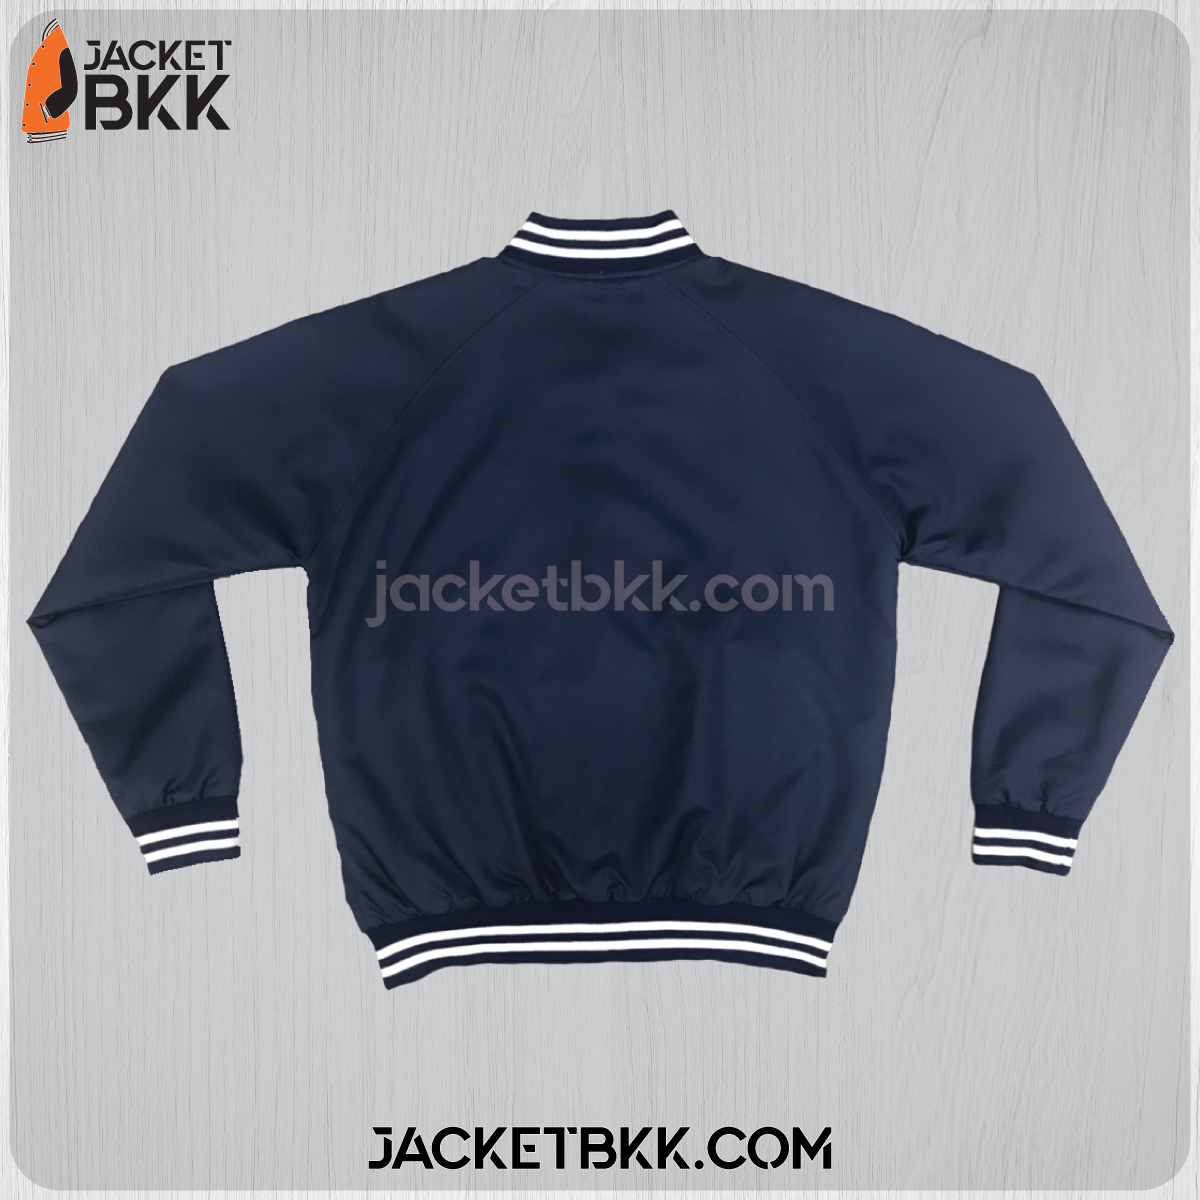 JMB-04-01 เสื้อแจ็คเก็ต ทรงเบสบอล แบบคอตั้งทอพรม สีกรมท่า ปกขลิปขาว